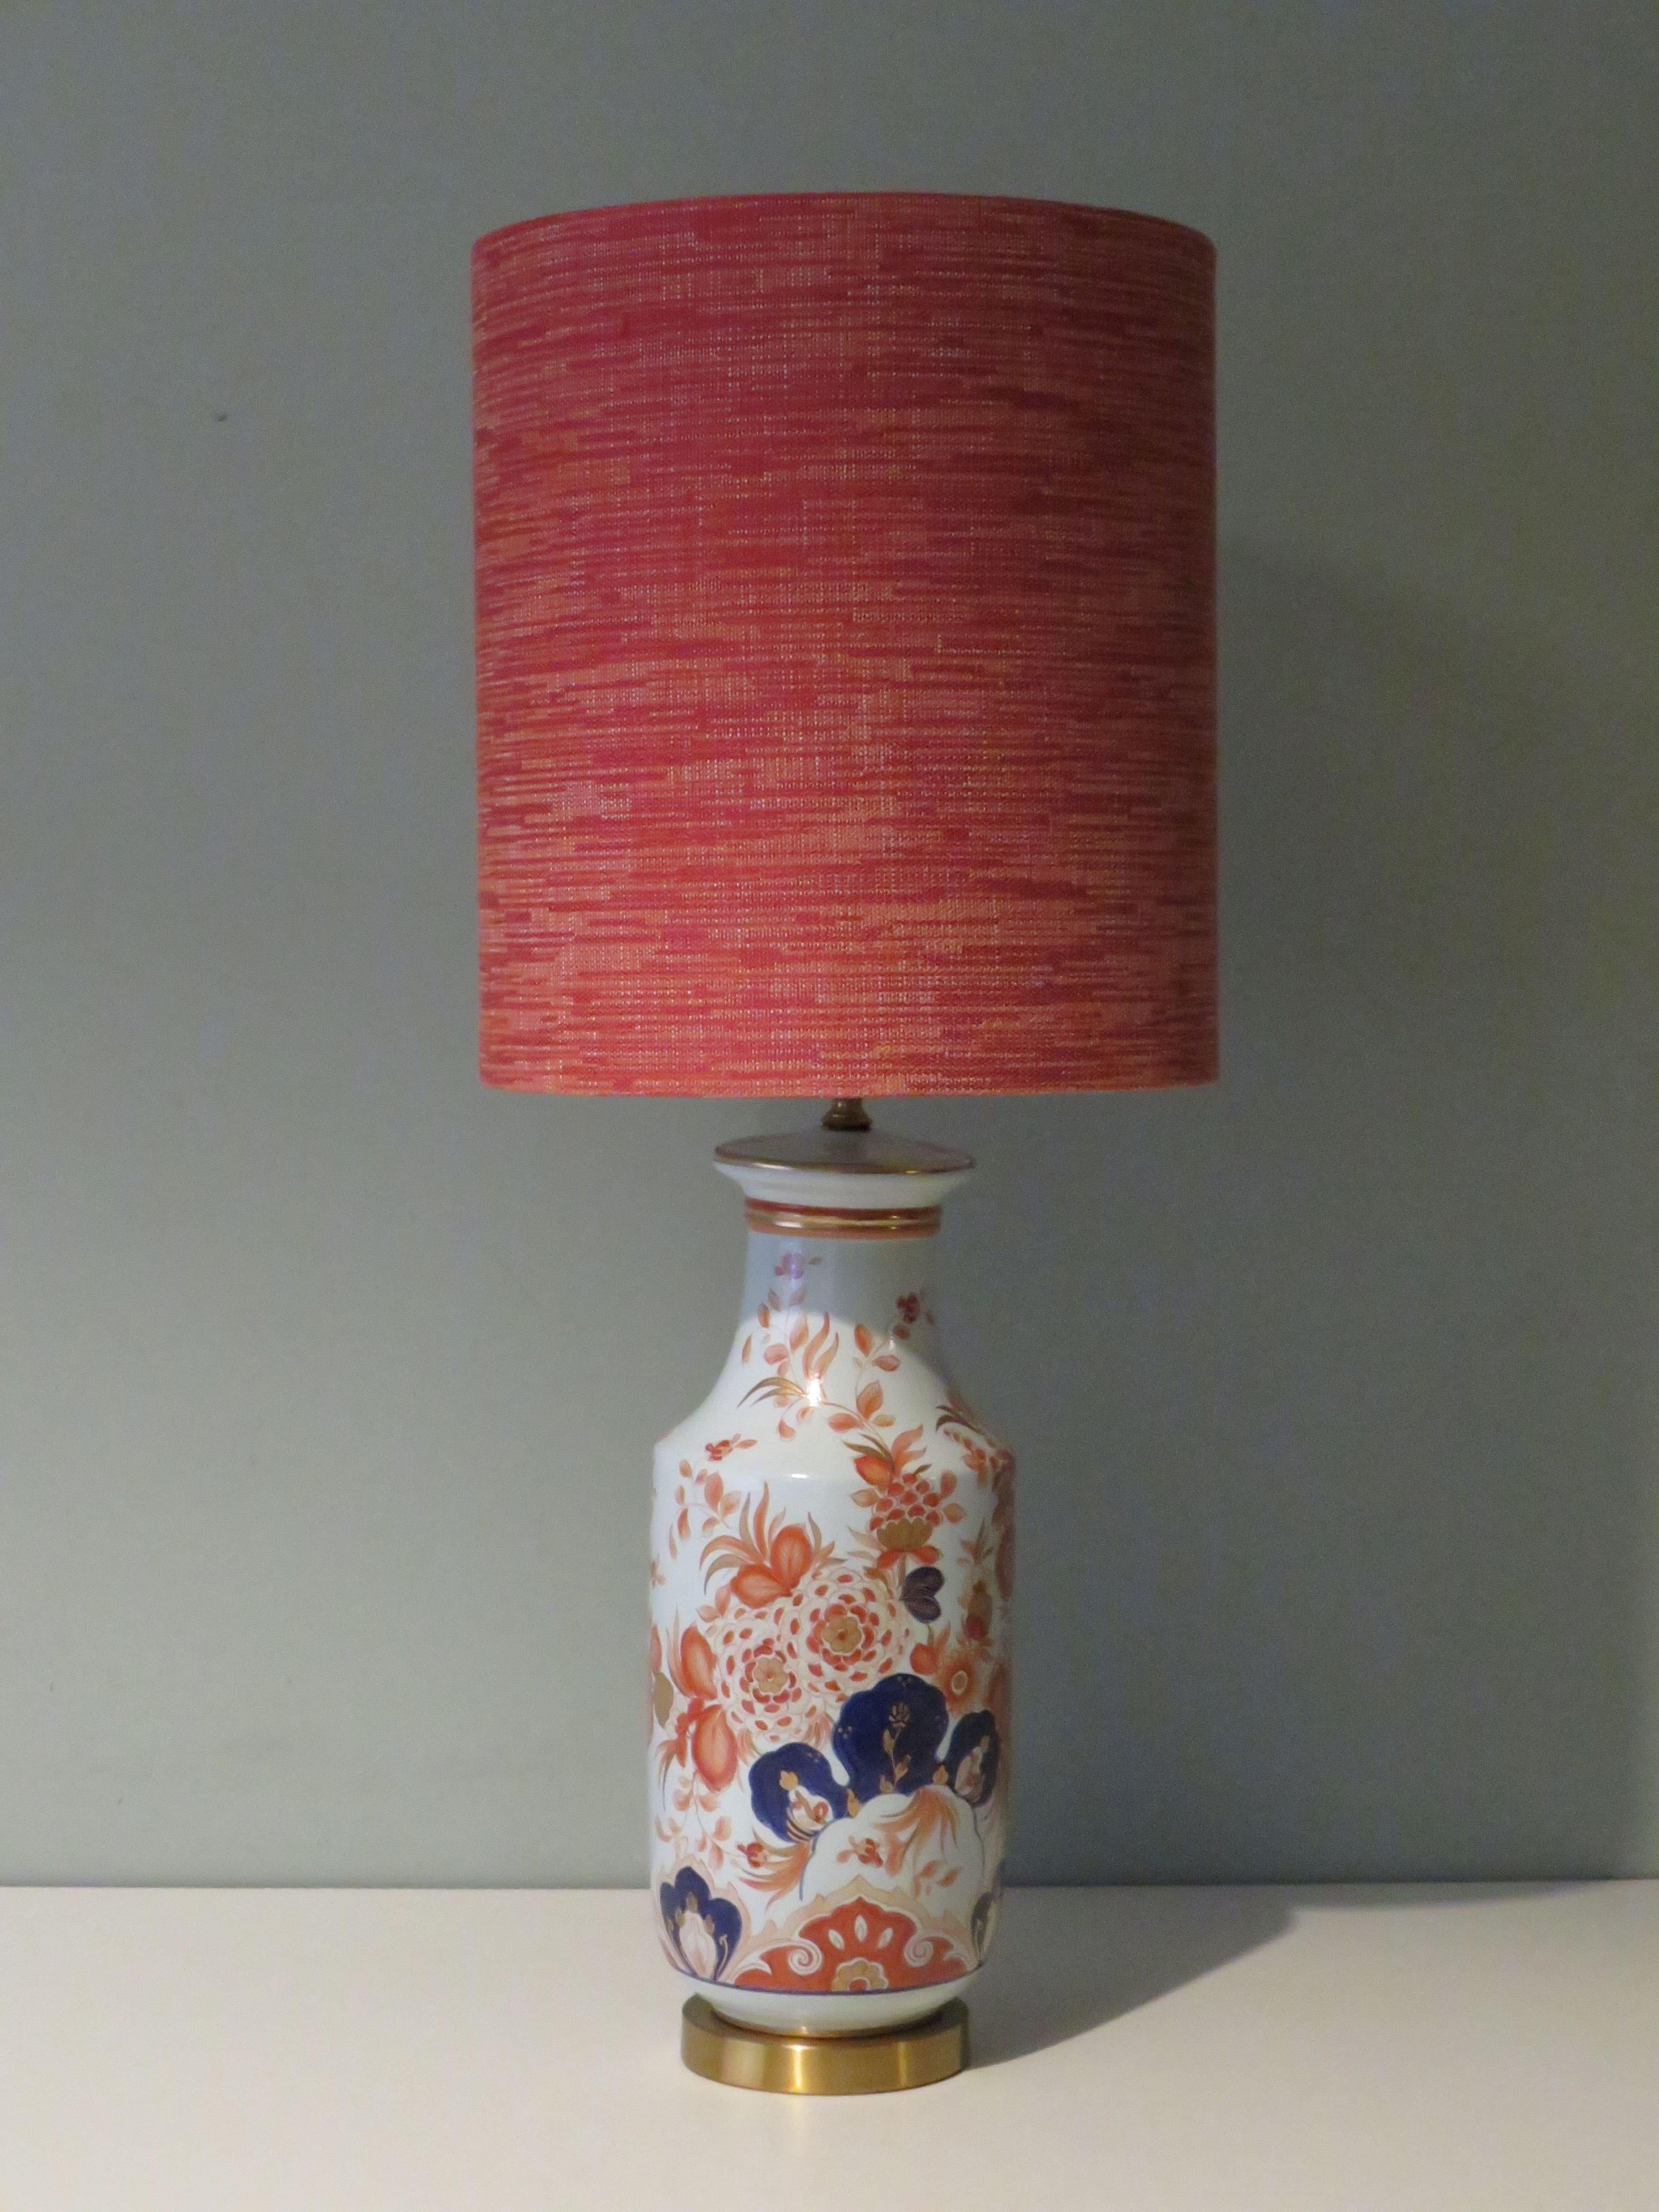 Der Lampenfuß hat ein attraktives, von Imari inspiriertes Blumenmuster und ist auf einem Messingfuß montiert.
Die Tischleuchte hat einen professionell handgefertigten Lampenschirm aus grob gewebtem, samtigem Stoff in Orange-, Rot- und Weißtönen.
Die